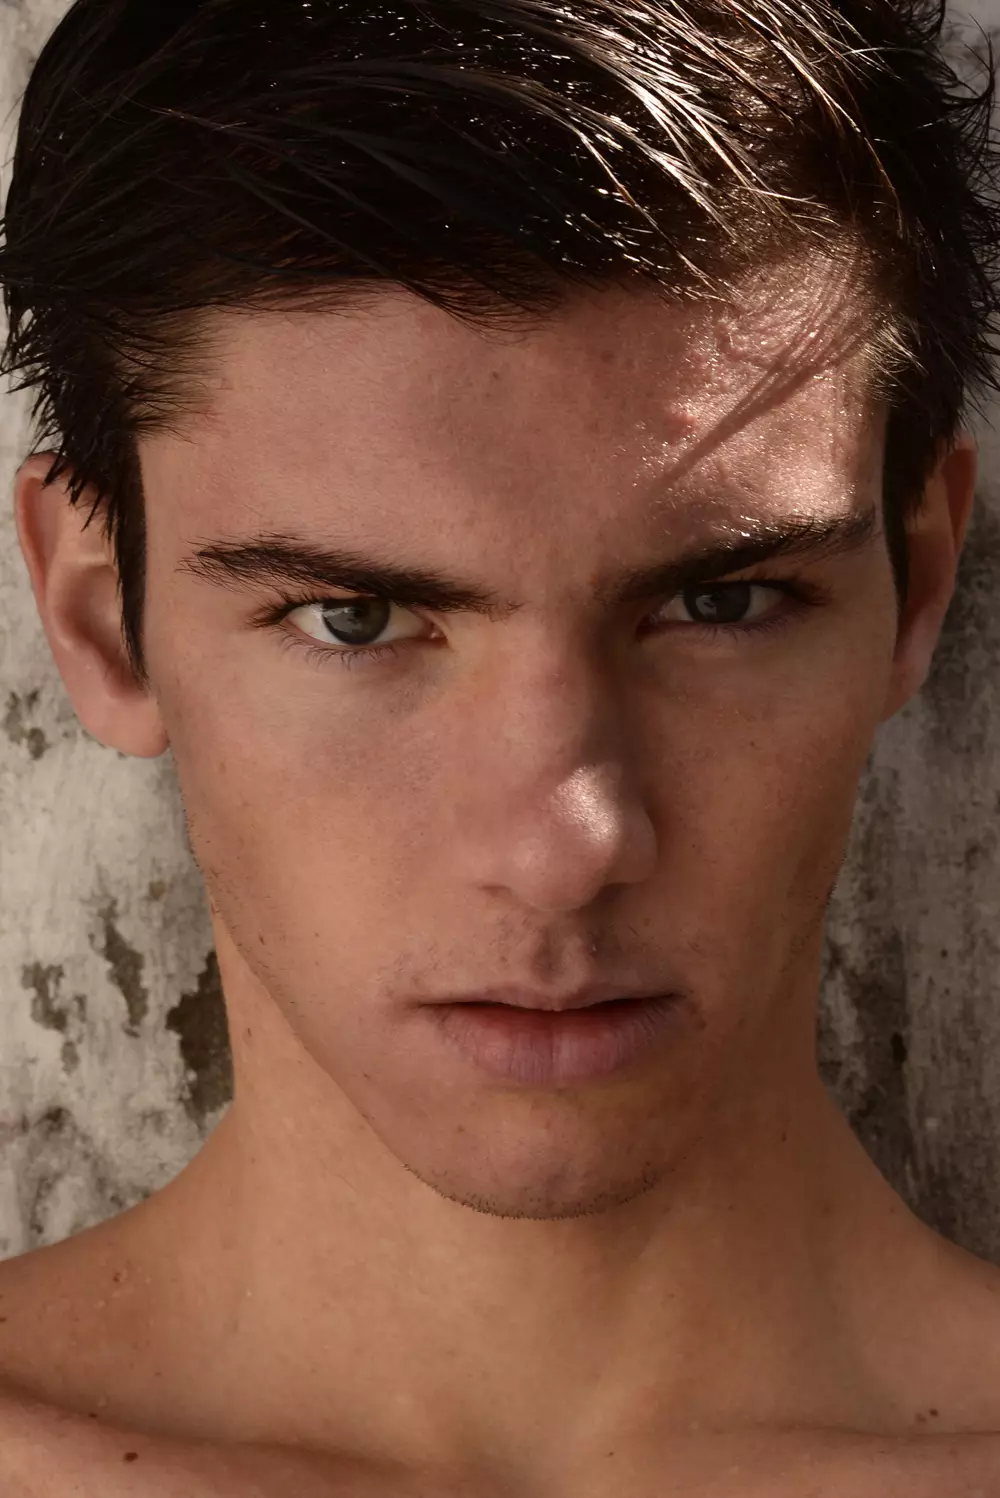 Tan caliente tan joven presentando el nuevo trabajo de Tino Vargas con la belleza argentina Martin de DHR Models.